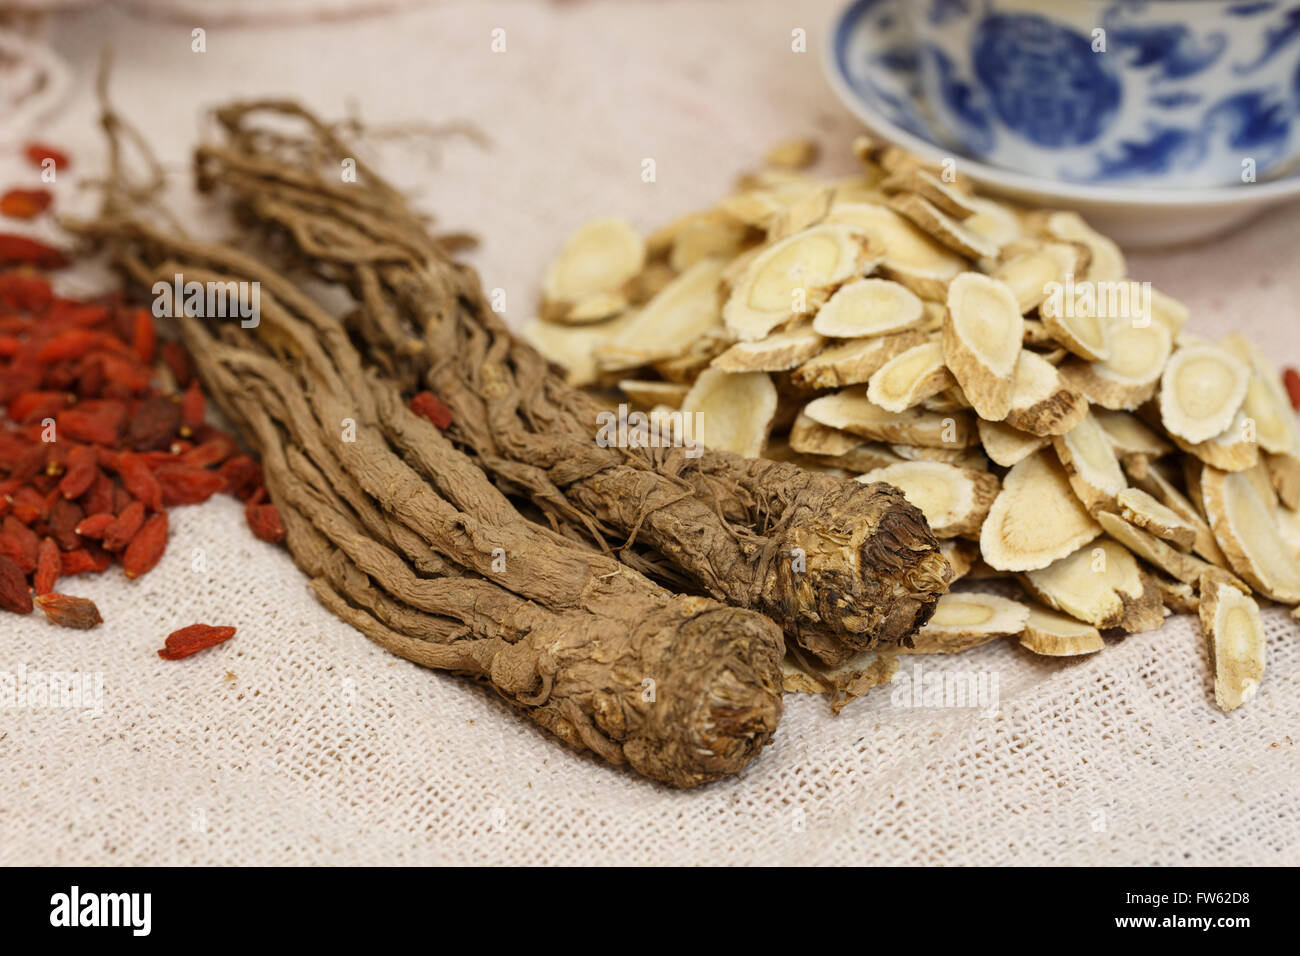 La médecine chinoise， ，herbes nourrissantes toutes sortes d'herbes nourrissantes natures mortes close-up Banque D'Images